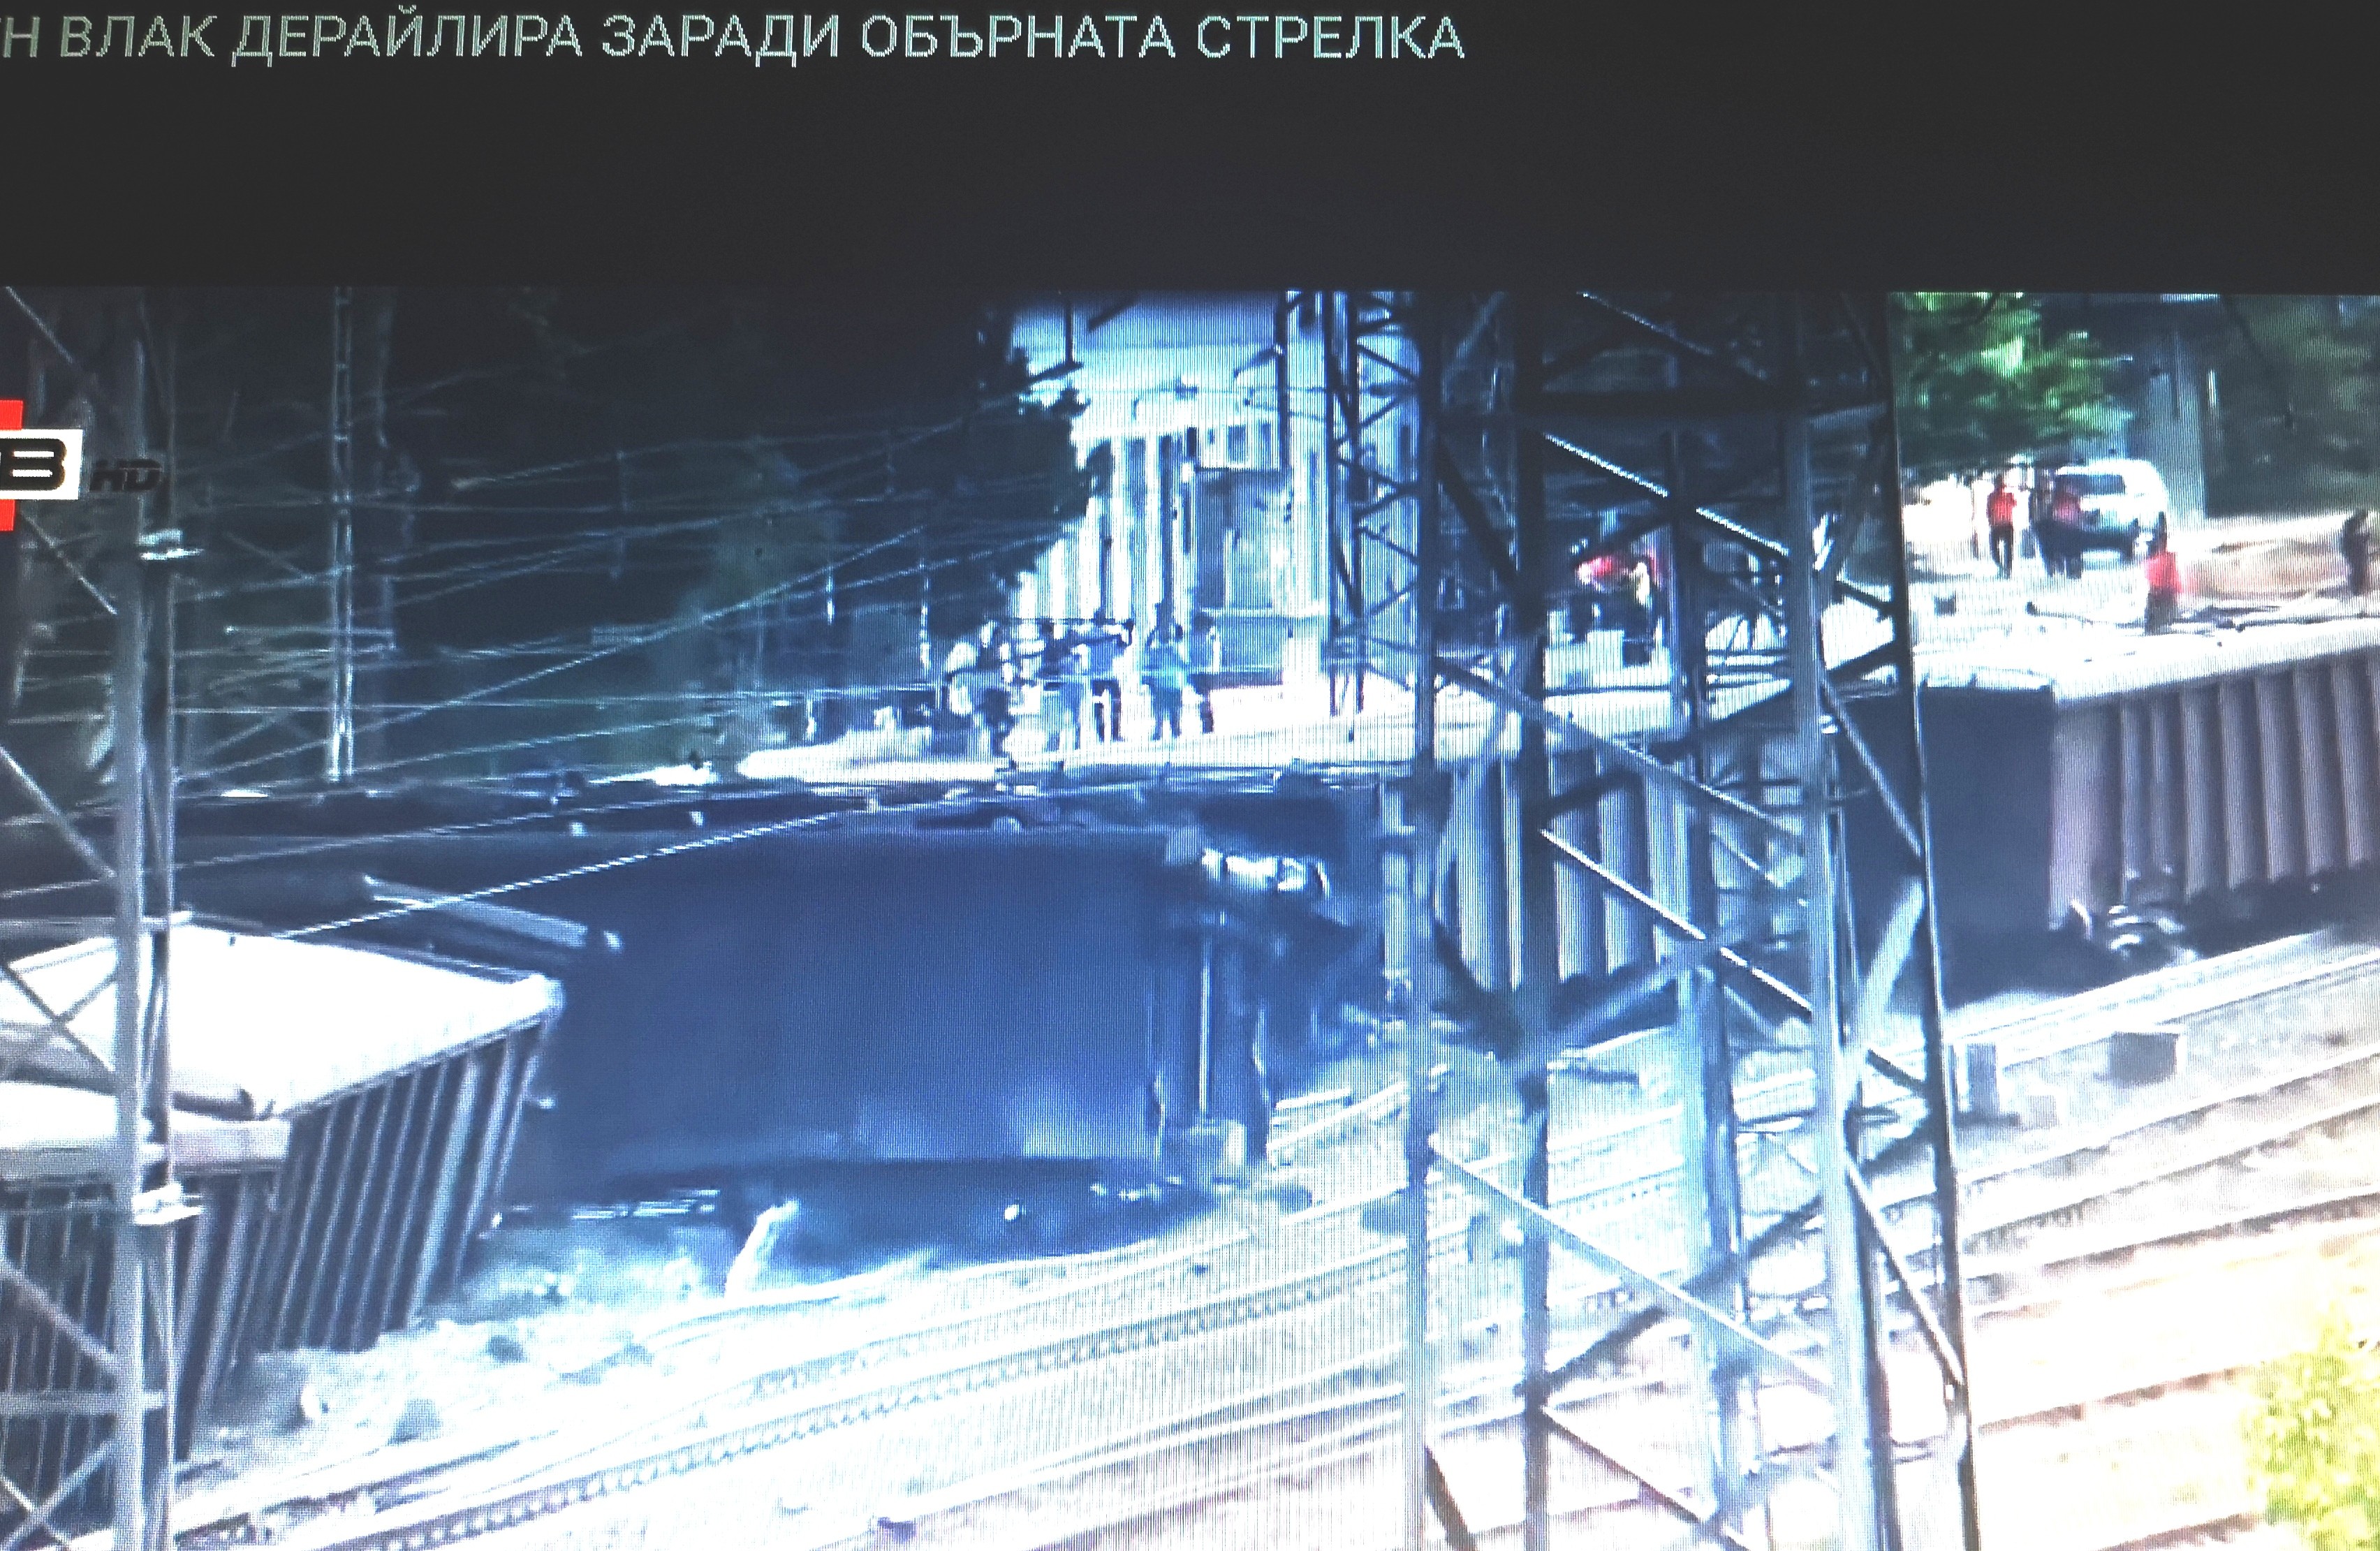 Ж.п. стрелка  дерайлира товарен влак  на гара Нова Загора 